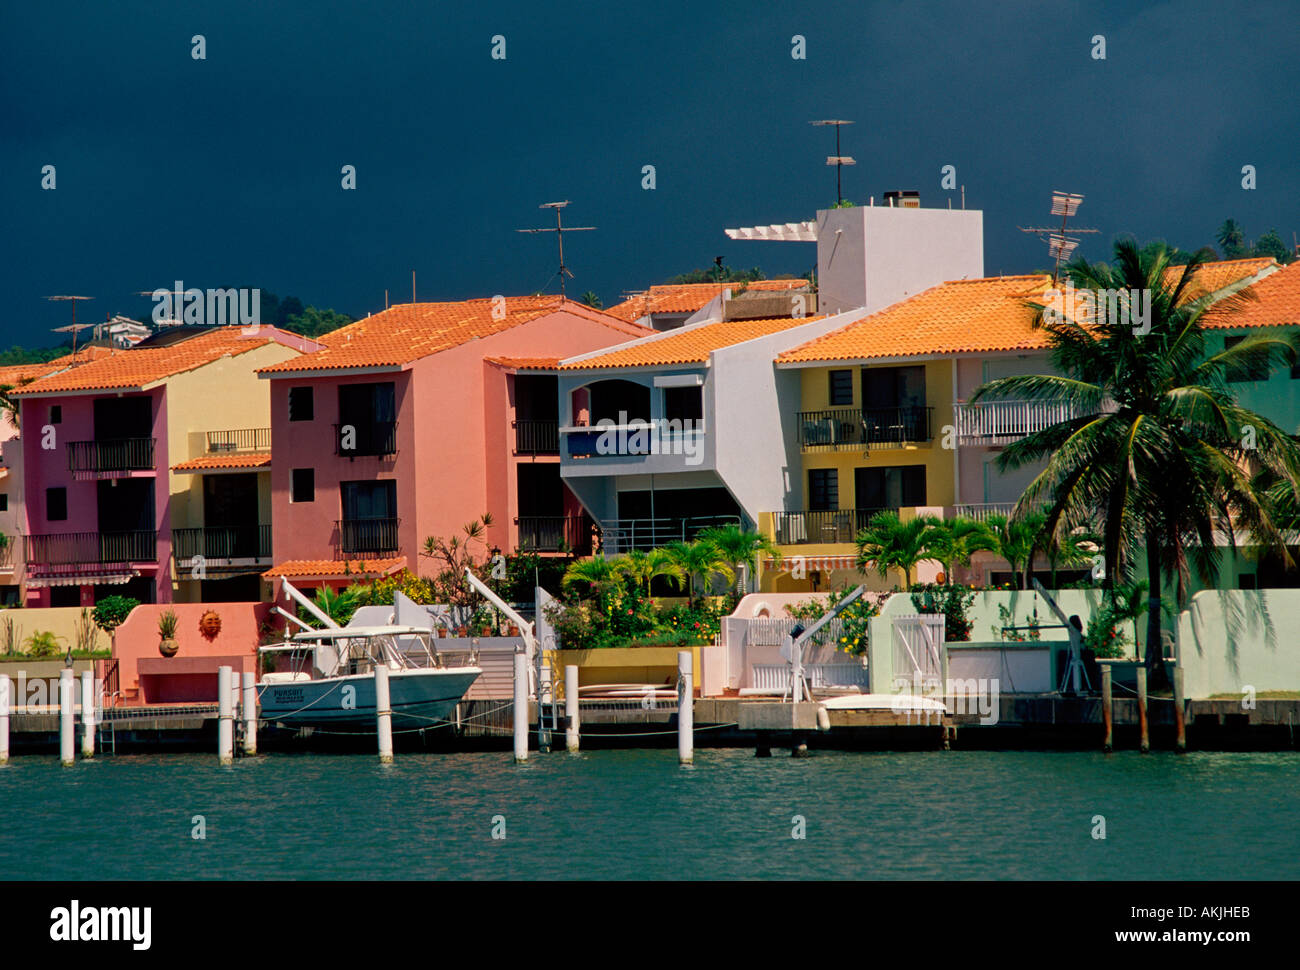 Resort palmas del mar fotografías e imágenes de alta resolución - Alamy